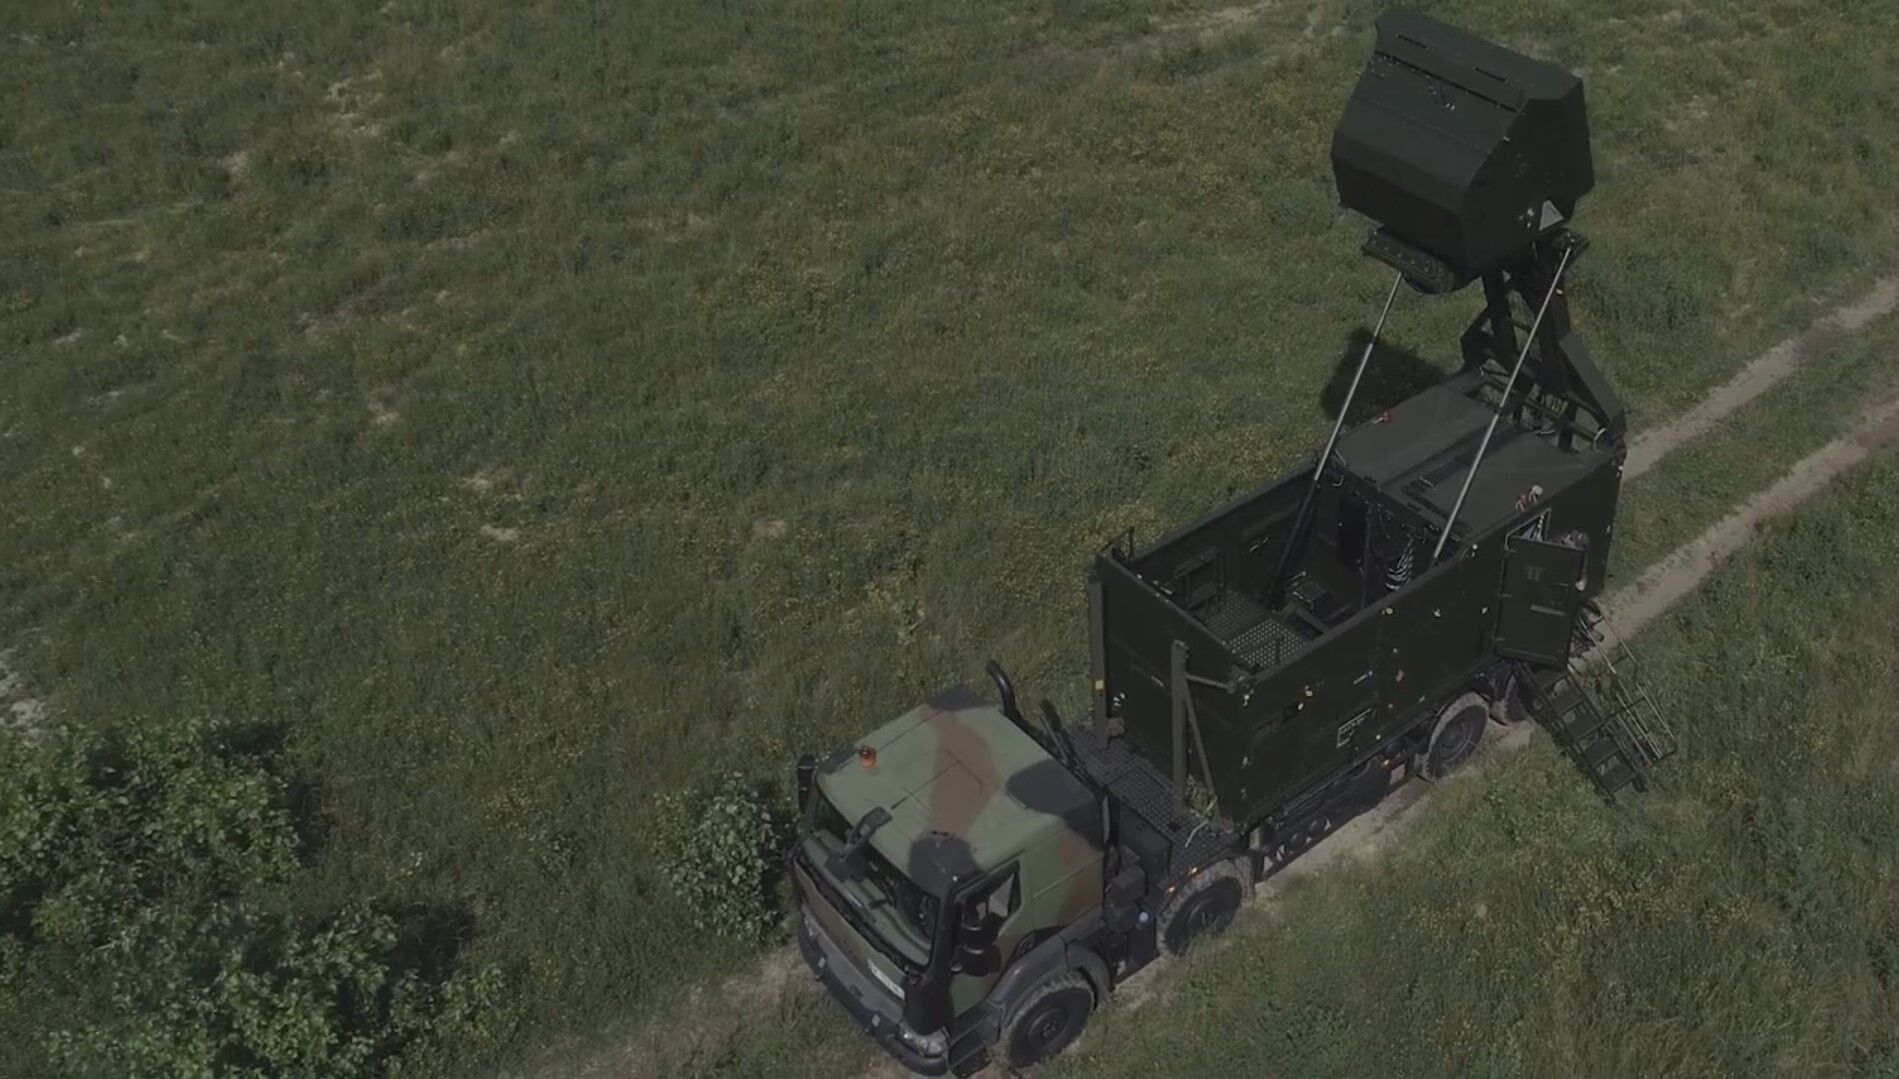 Франция поможет Украине приобрести радары ПВО GM200: чем они полезны для ВСУ. Фото